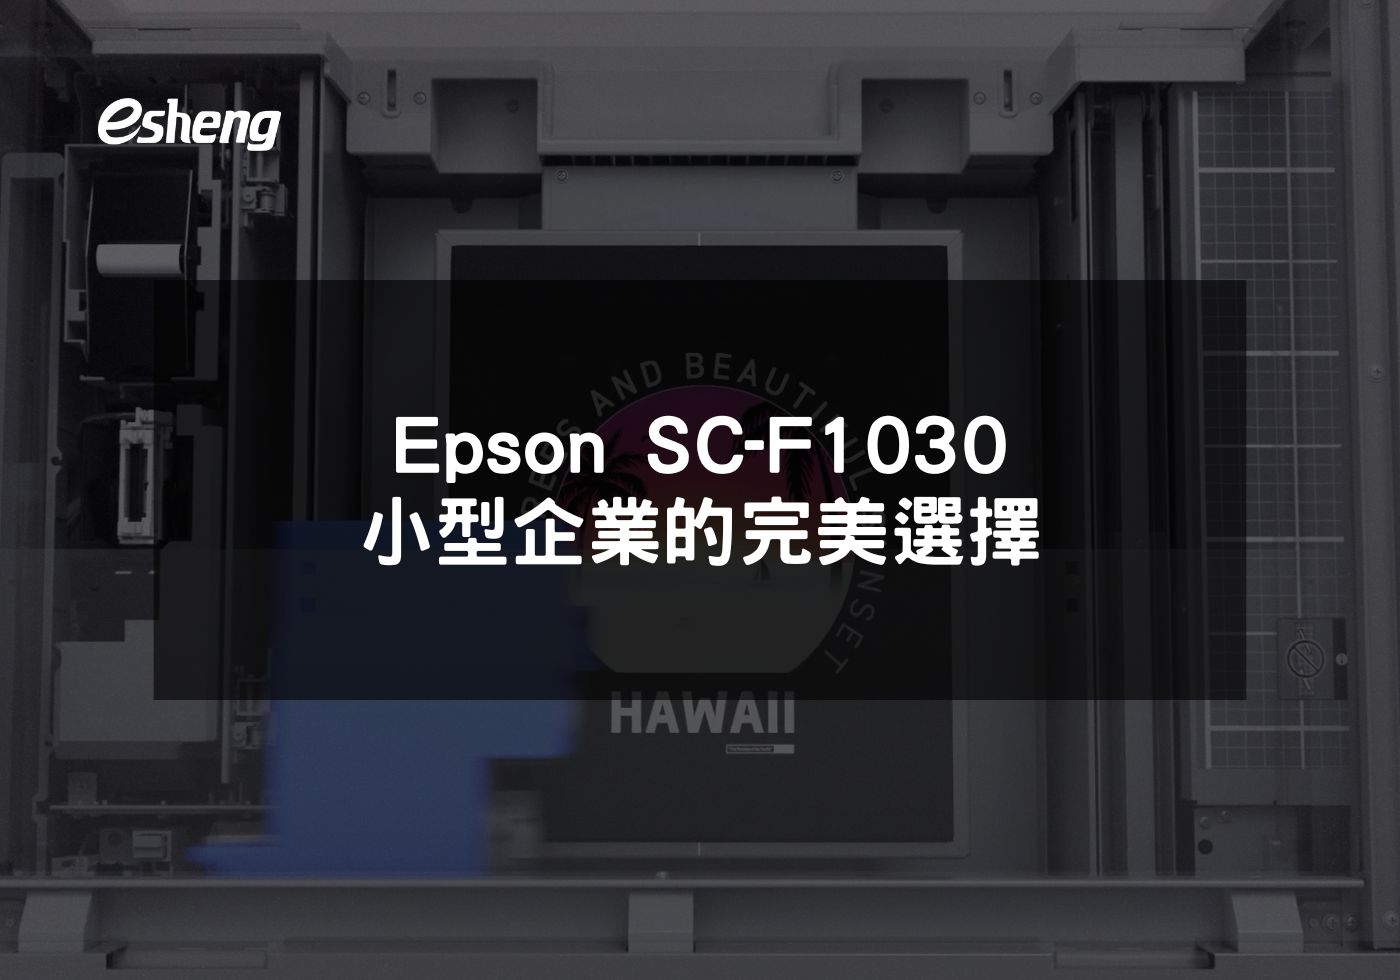 您目前正在查看 Epson SC-F1030 小型企業的完美選擇